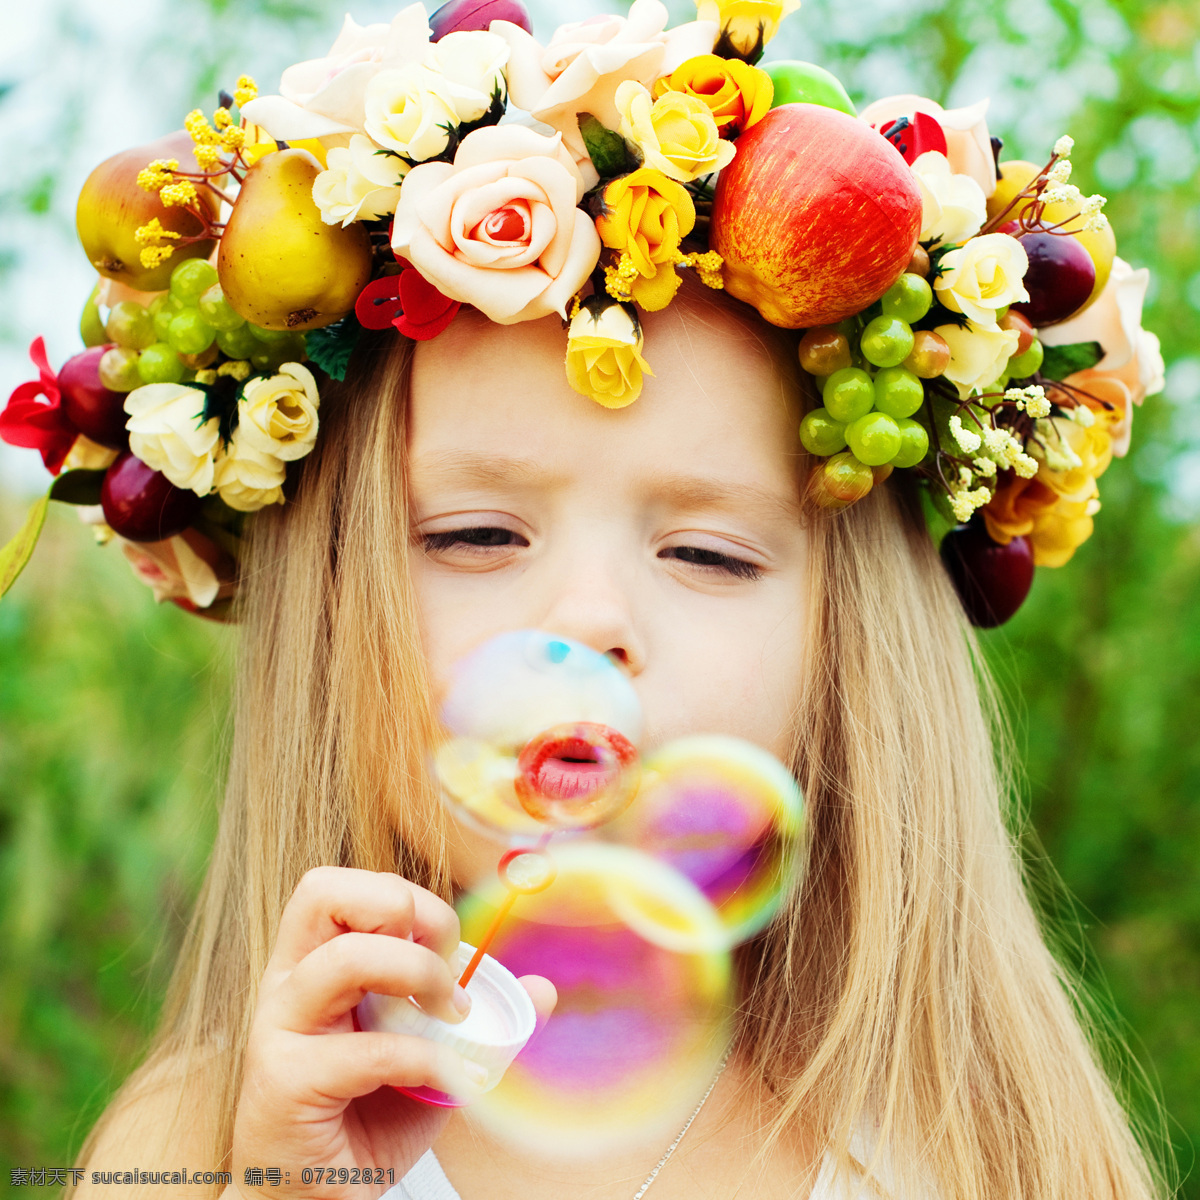 正在 吹 泡泡 小女孩 春天 春节 自然 万物复苏 花环 水果 吹泡泡 肥皂泡 儿童图片 人物图片